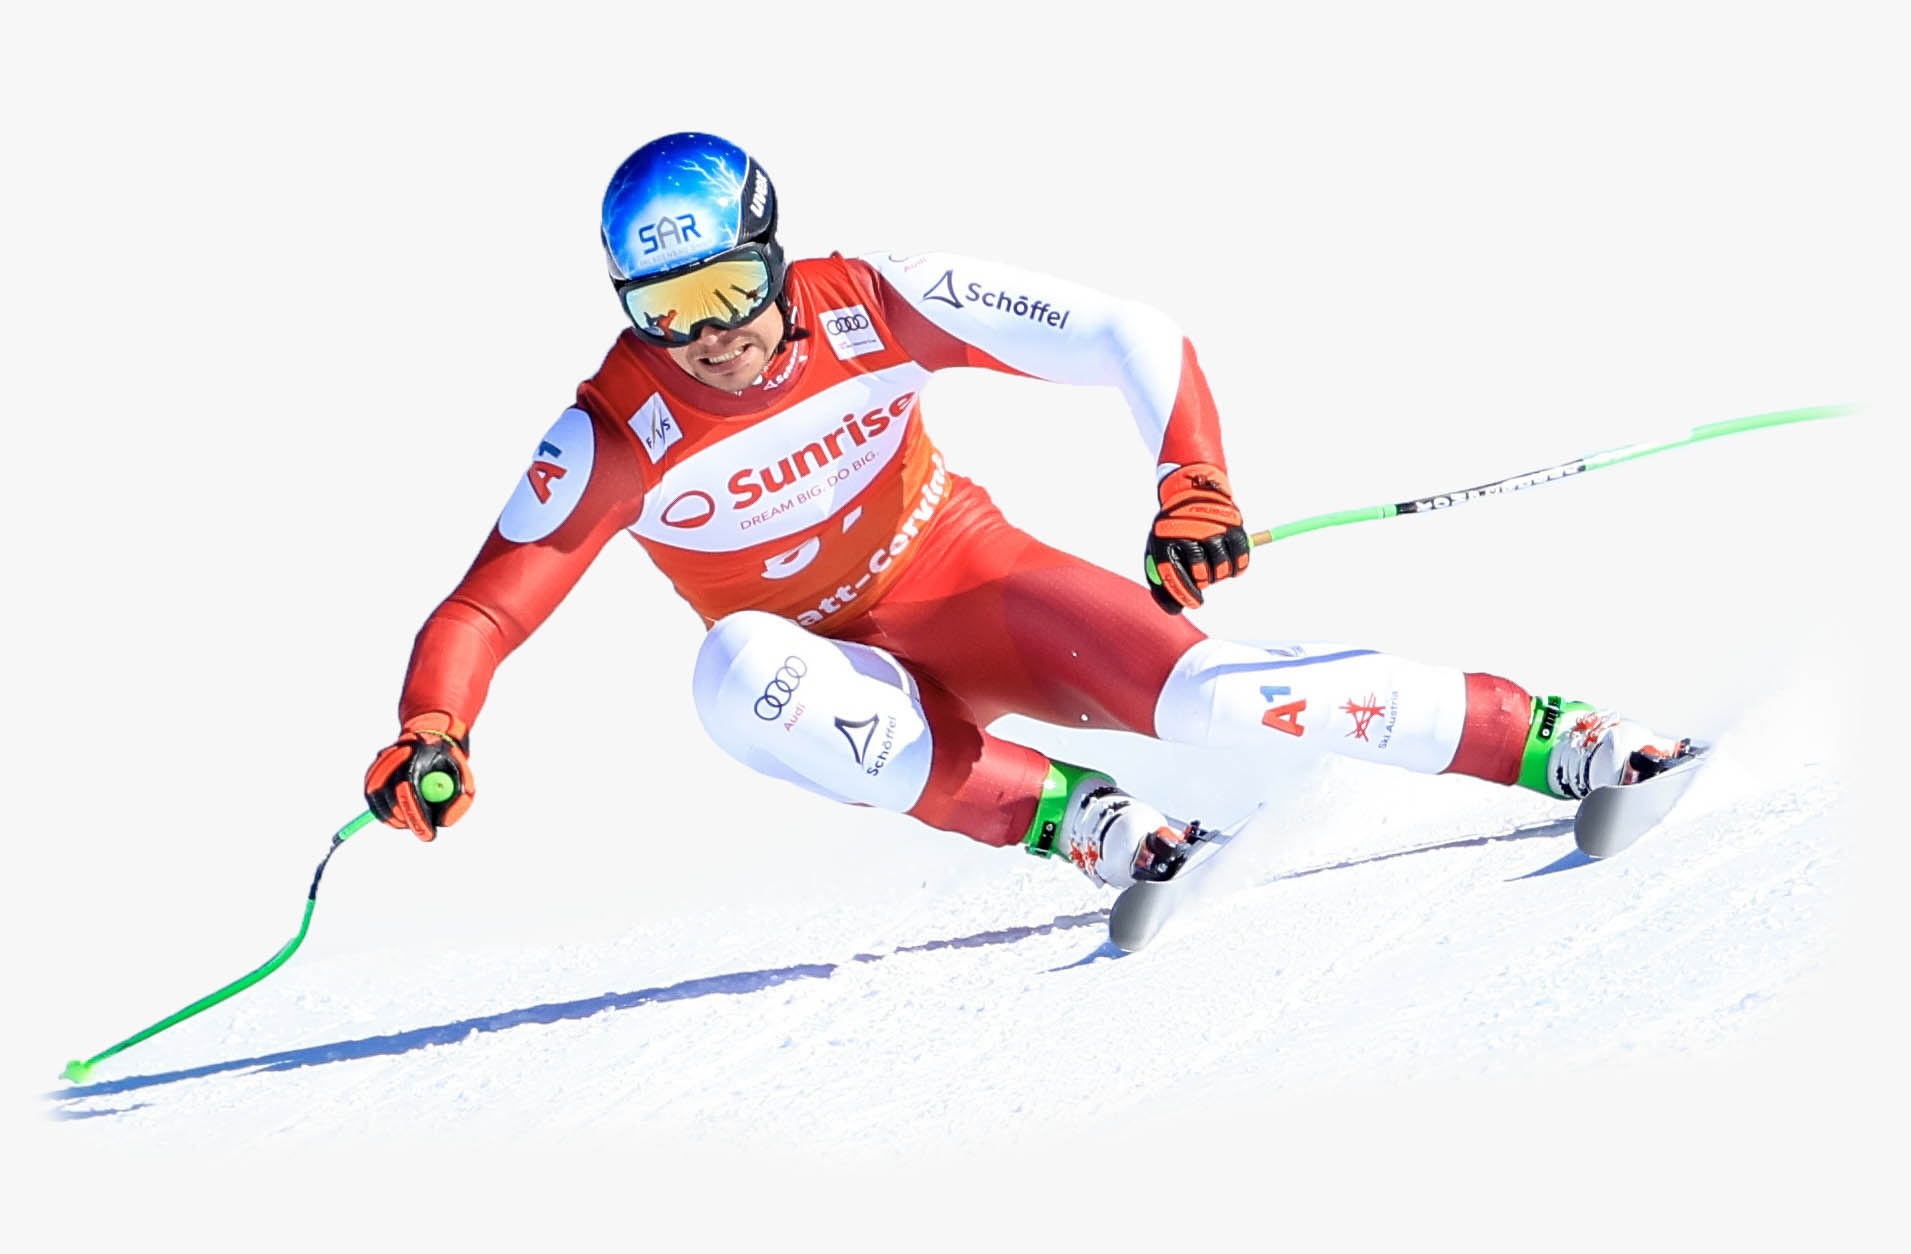 ski racer Christoph Krenn